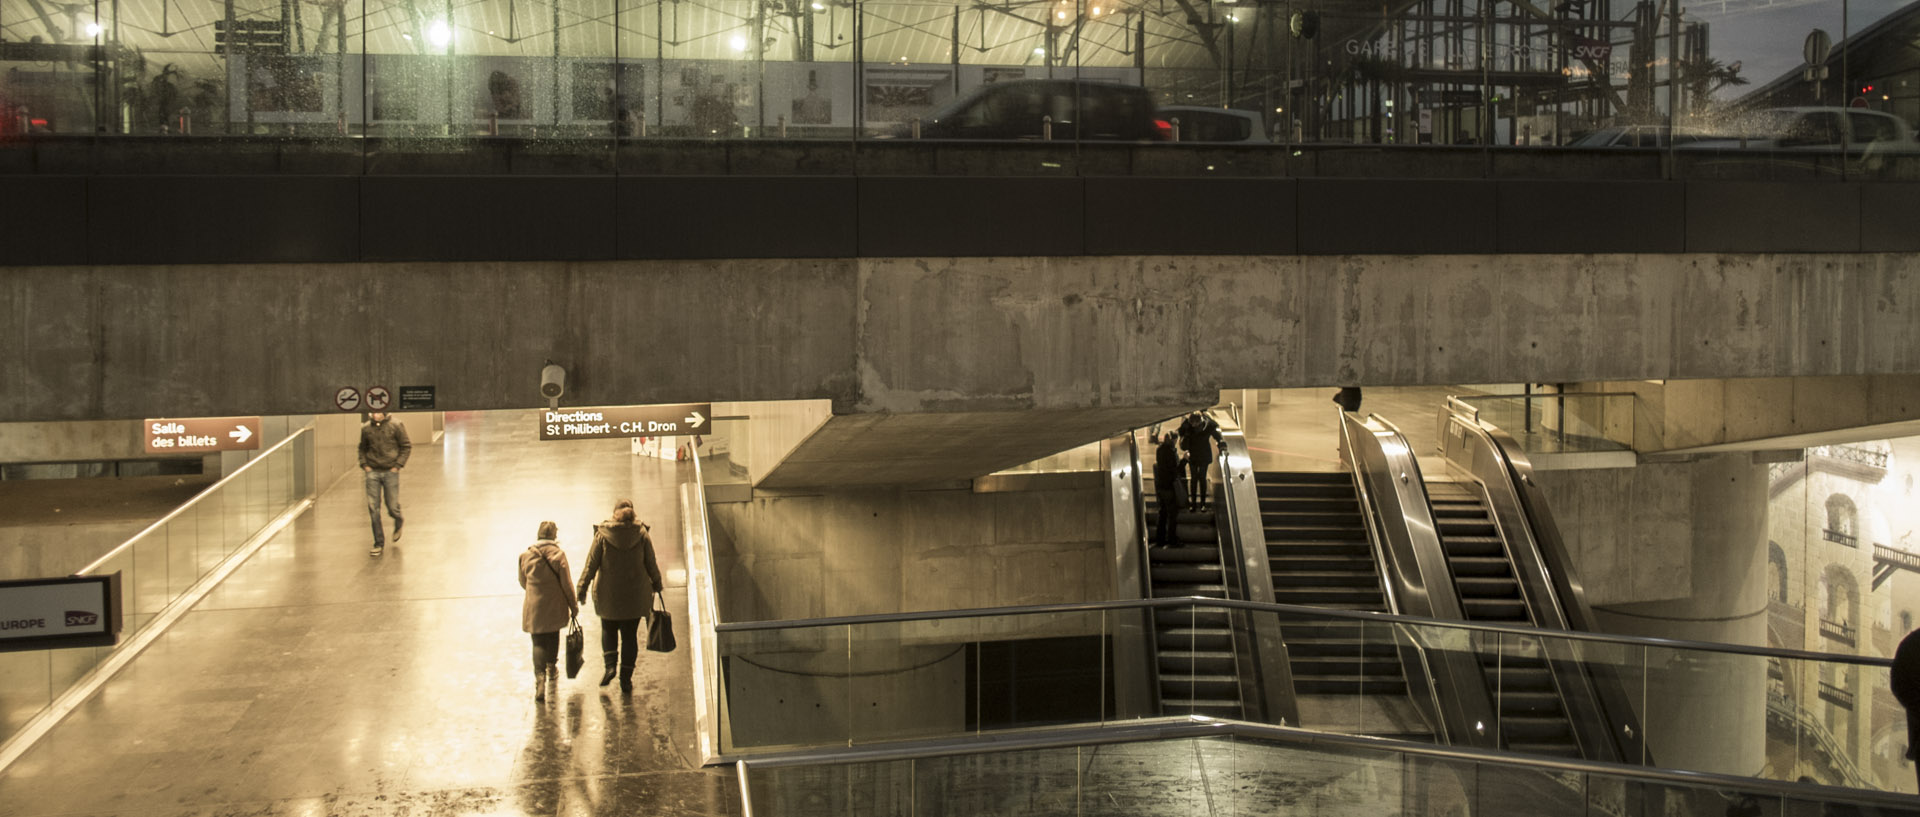 Lundi 29 décembre 2014, 17:17, station de métro Lille Europe